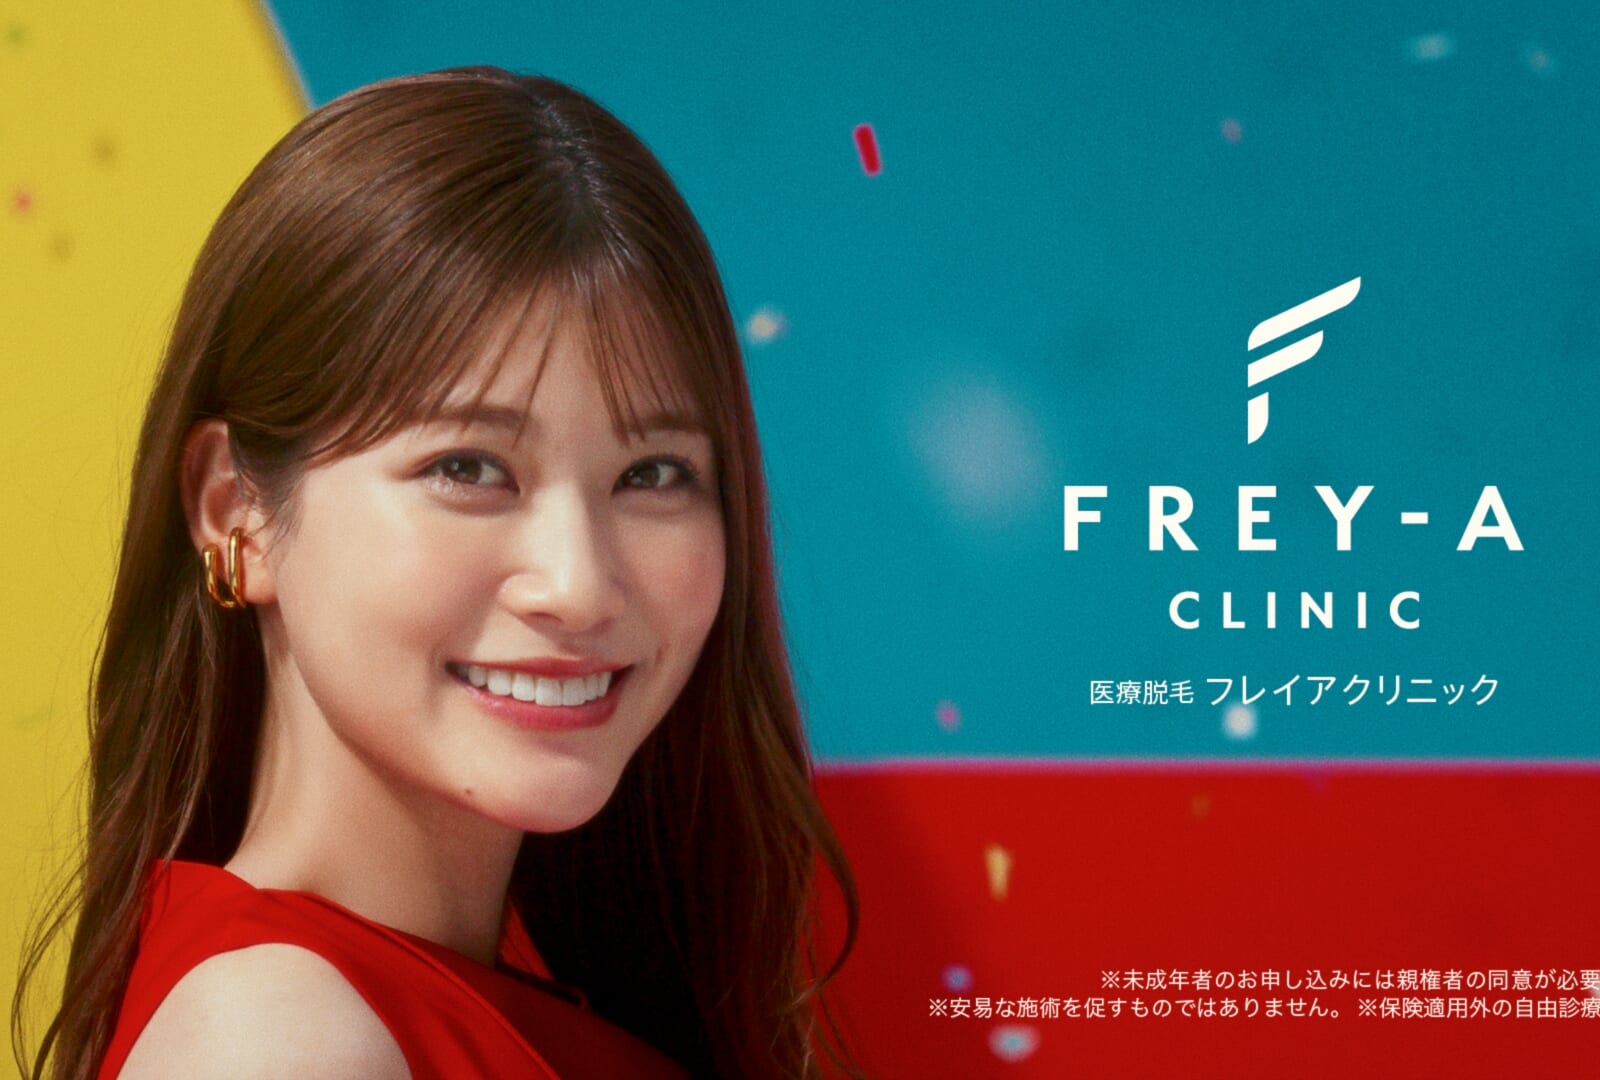 モデル、女優として注目を浴びる生見愛瑠さんが出演！ フレイアクリニック新CMが放映開始。